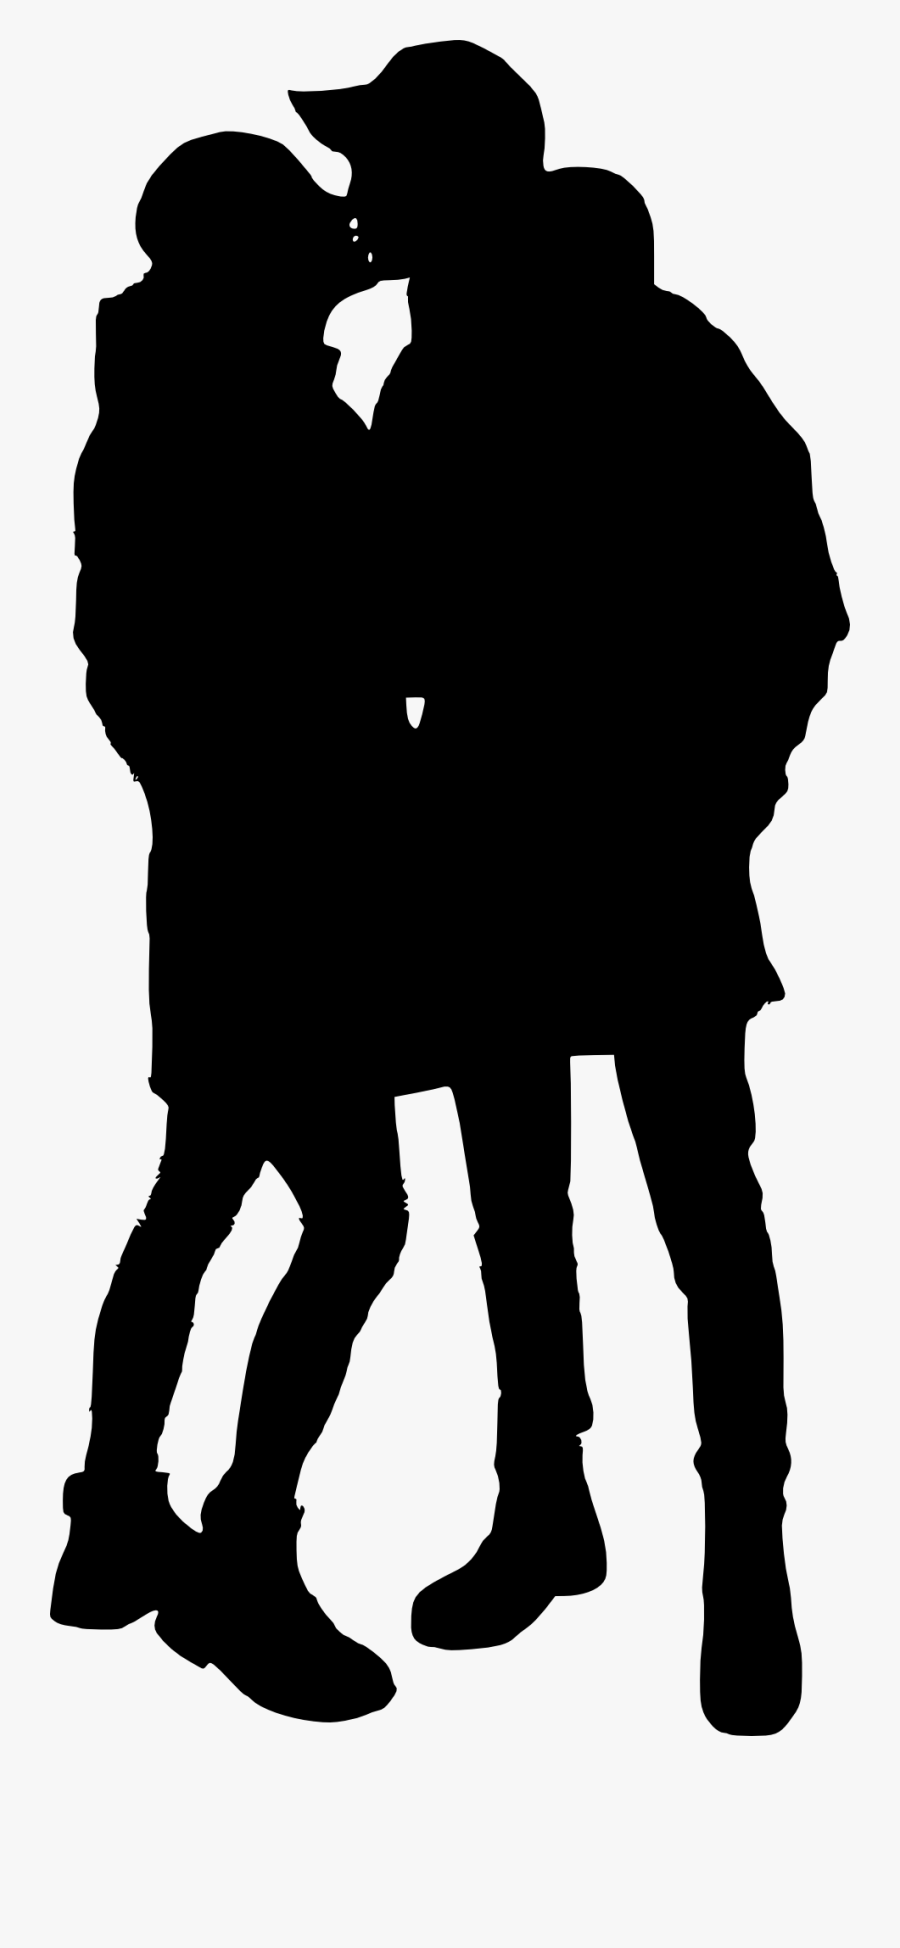 Couple Silhouette Transparent Background, Transparent Clipart